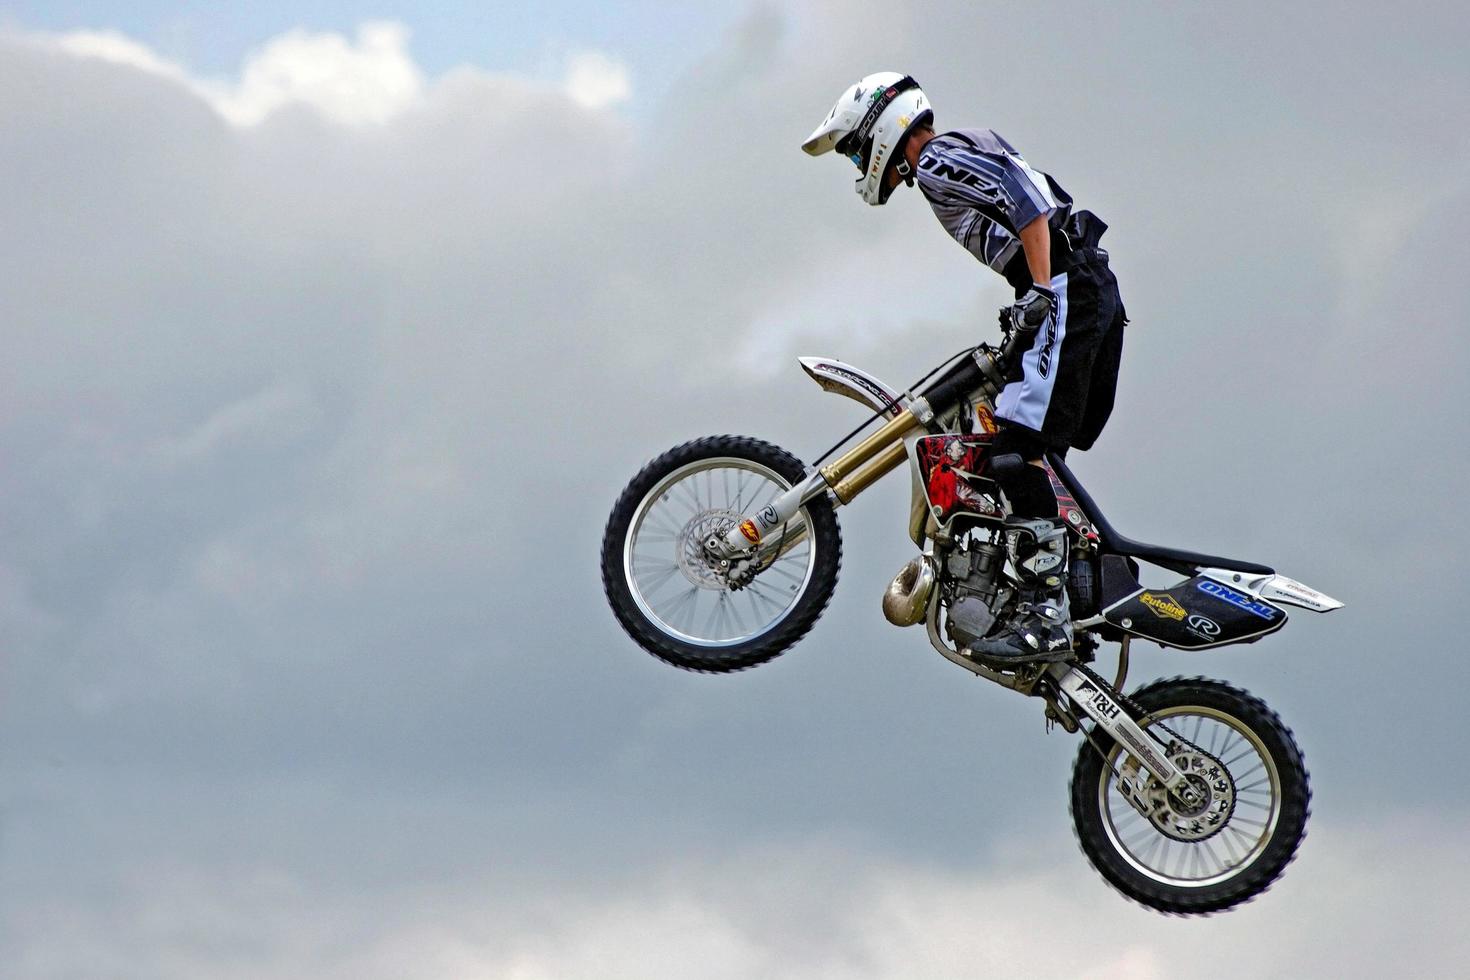 Paddock Wood, Kent, Reino Unido, 2005. Motociclista acrobático actuando en la granja de lúpulo foto